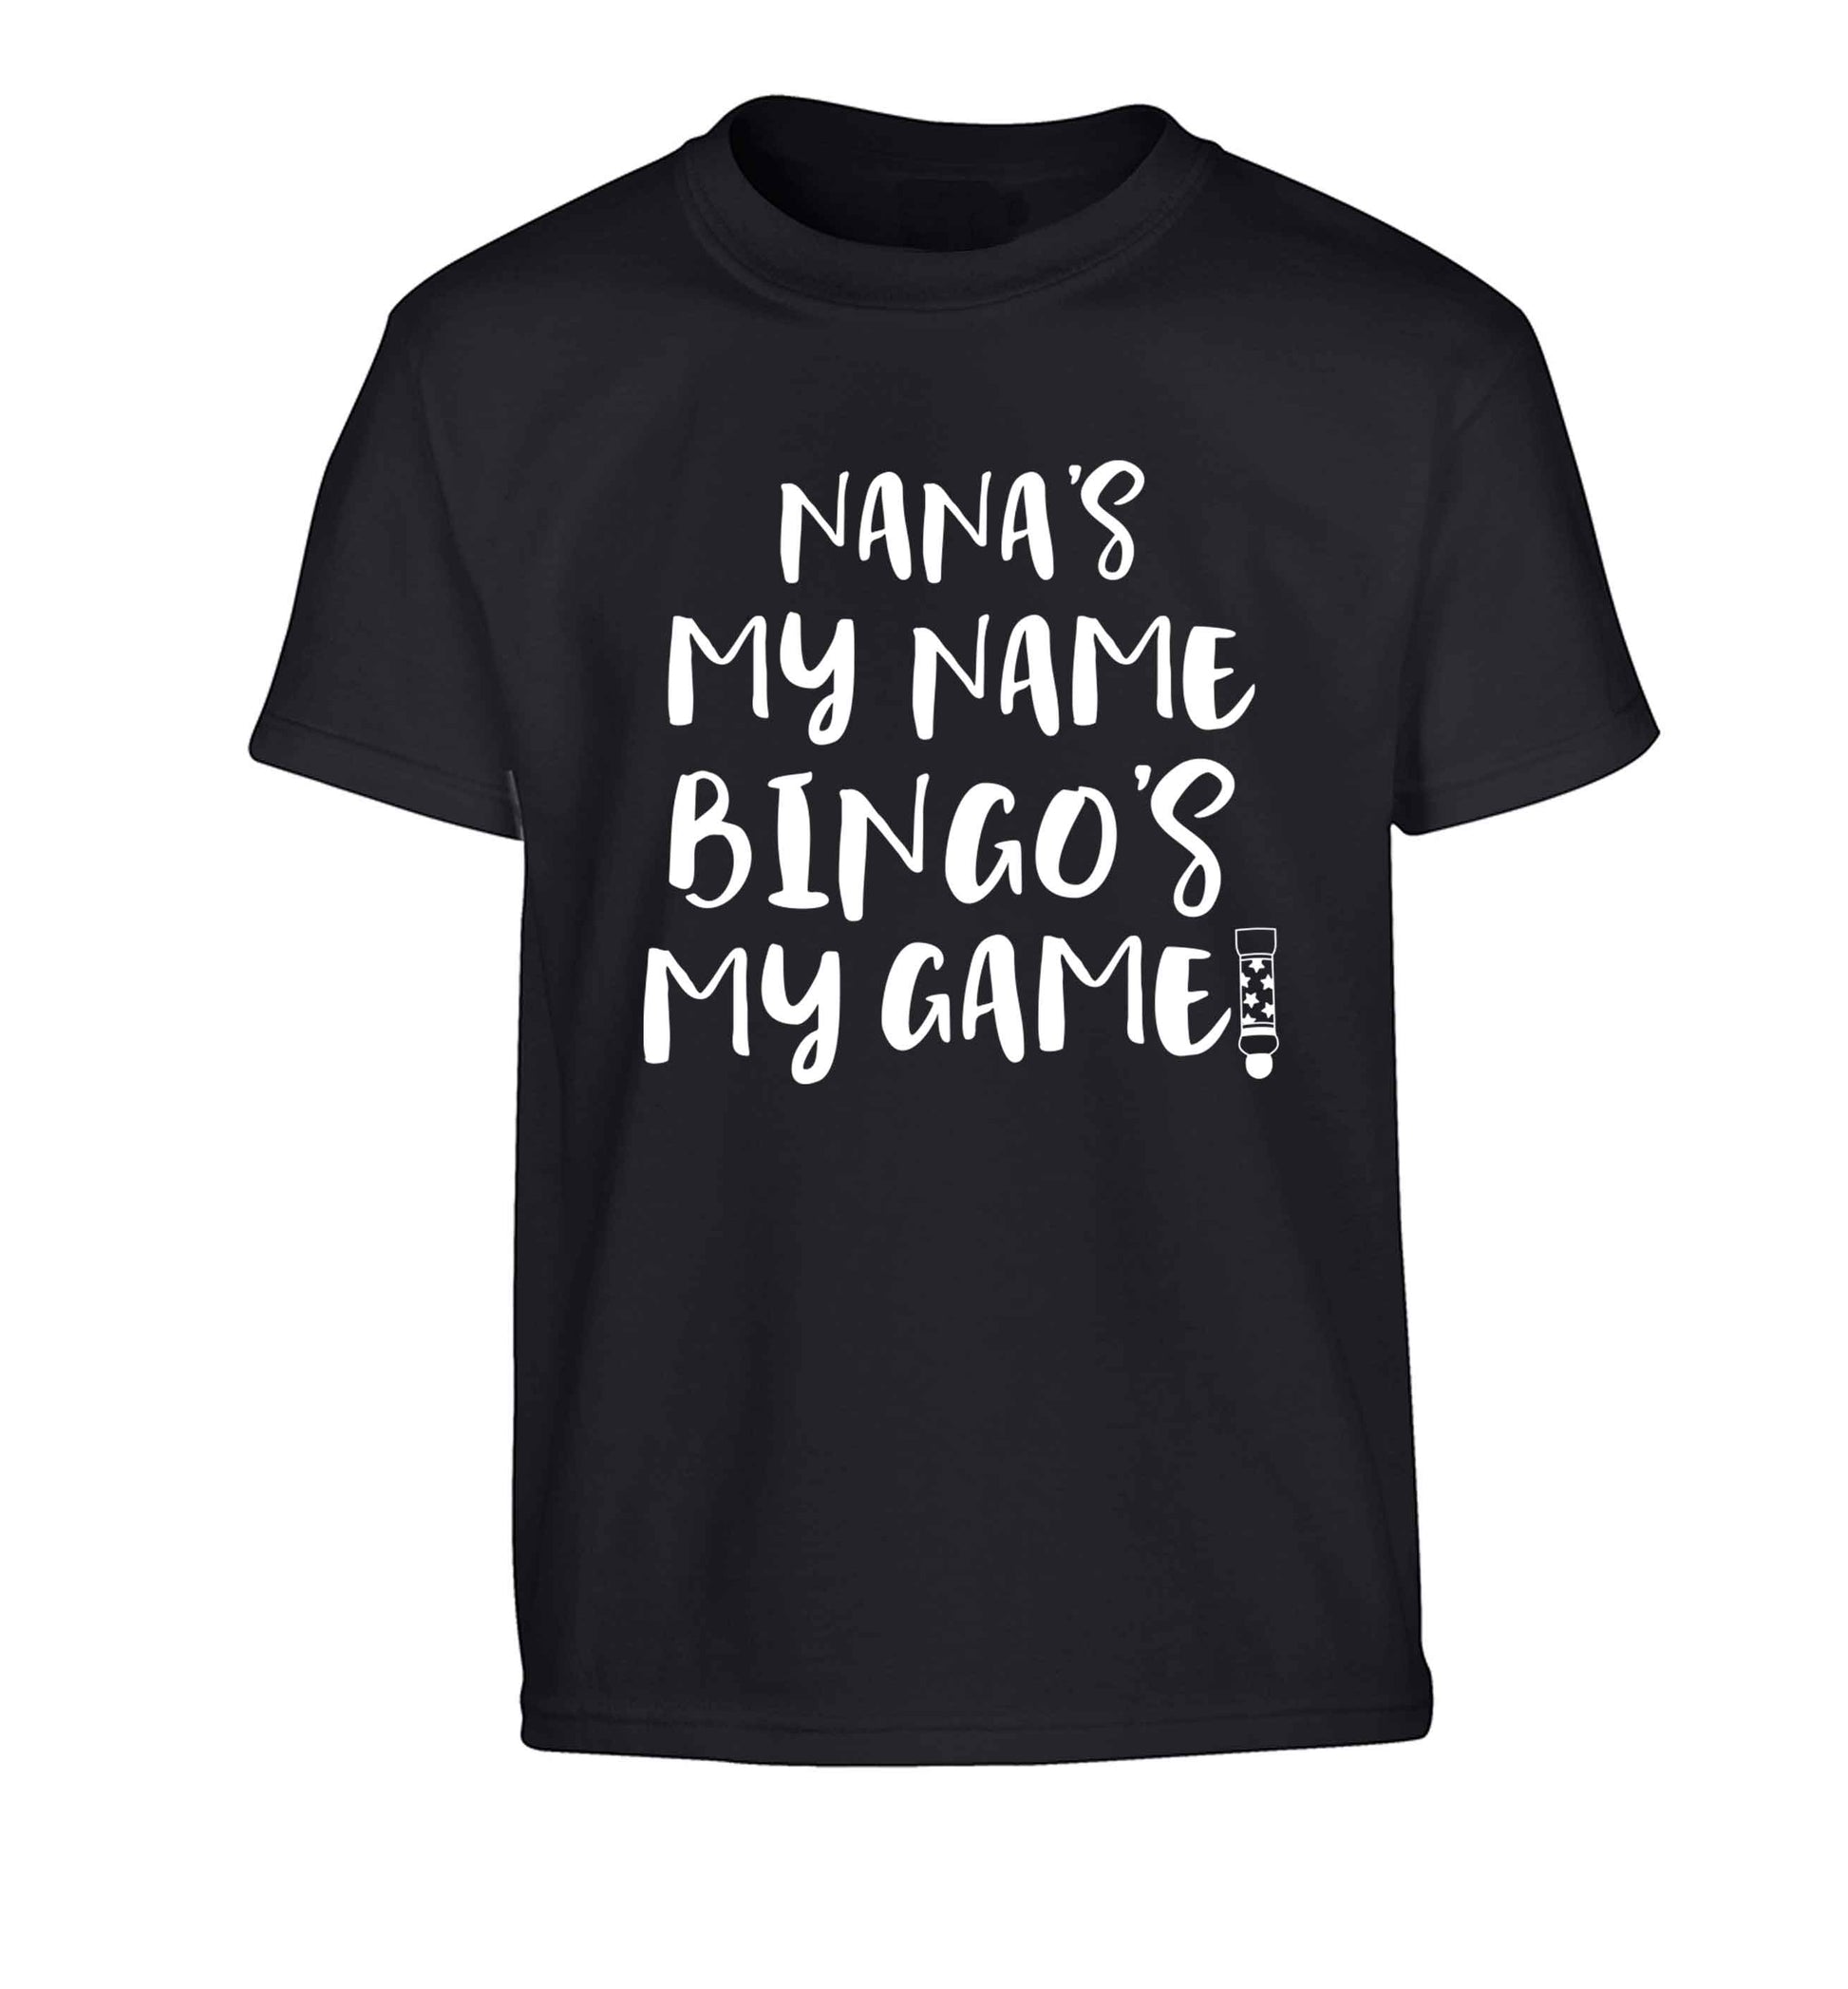 Nana's my name bingo's my game! Children's black Tshirt 12-13 Years